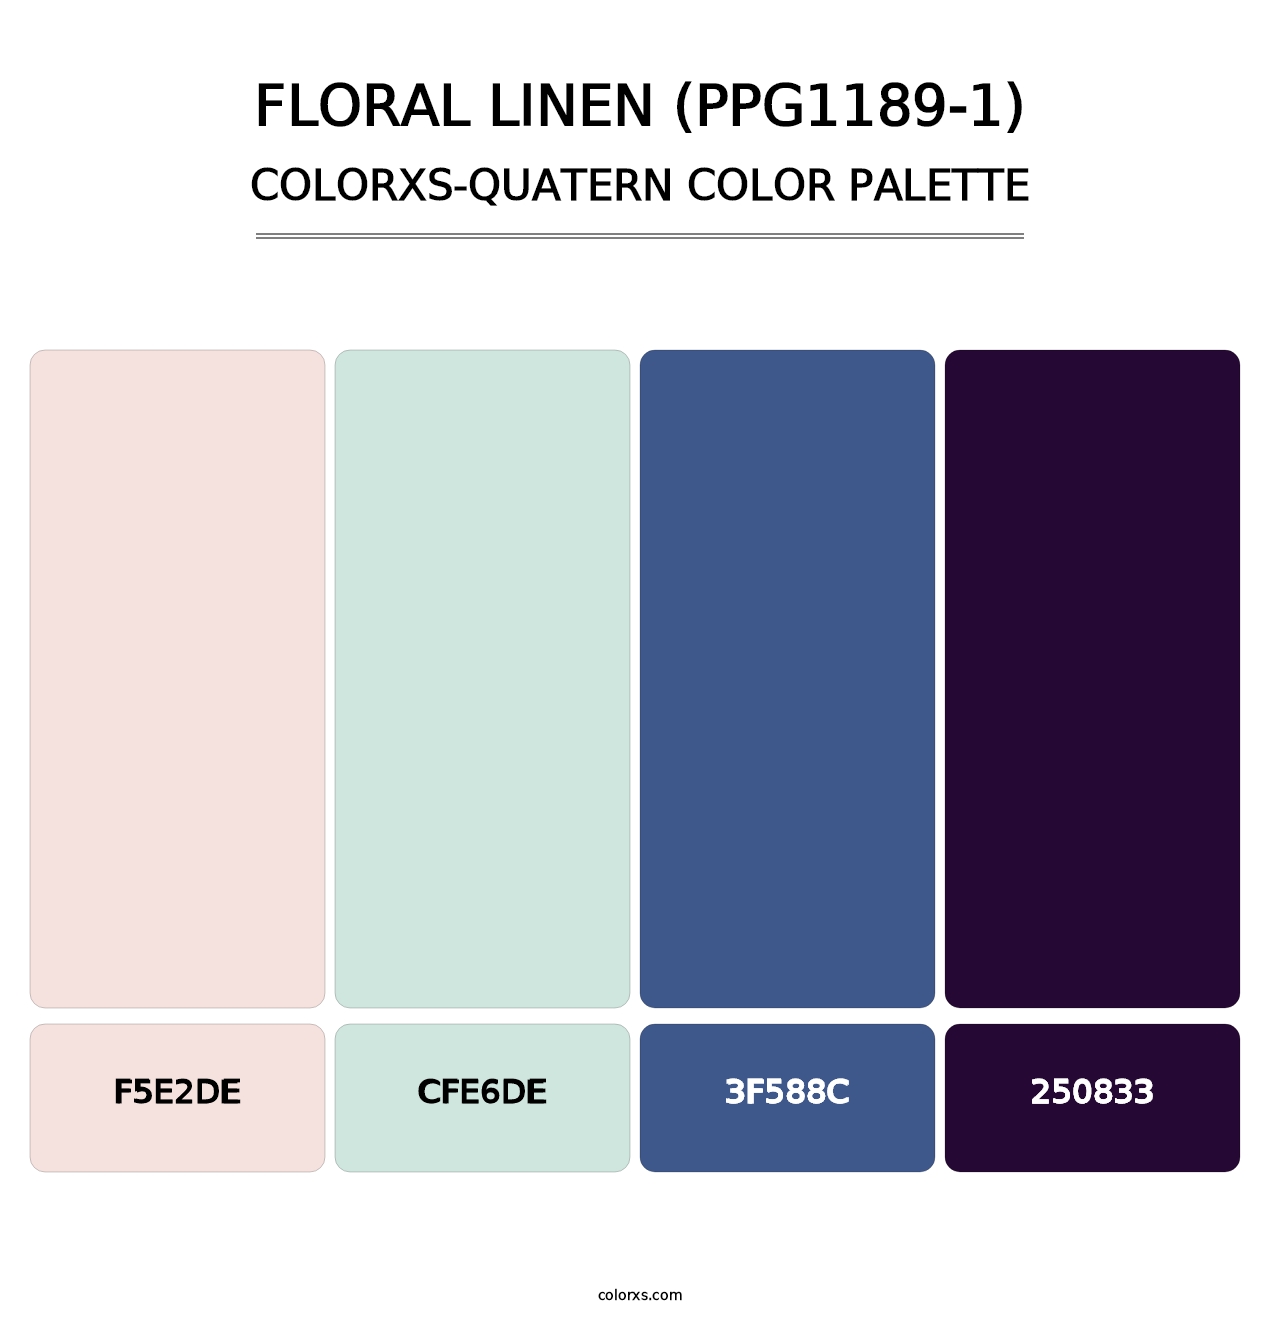 Floral Linen (PPG1189-1) - Colorxs Quatern Palette